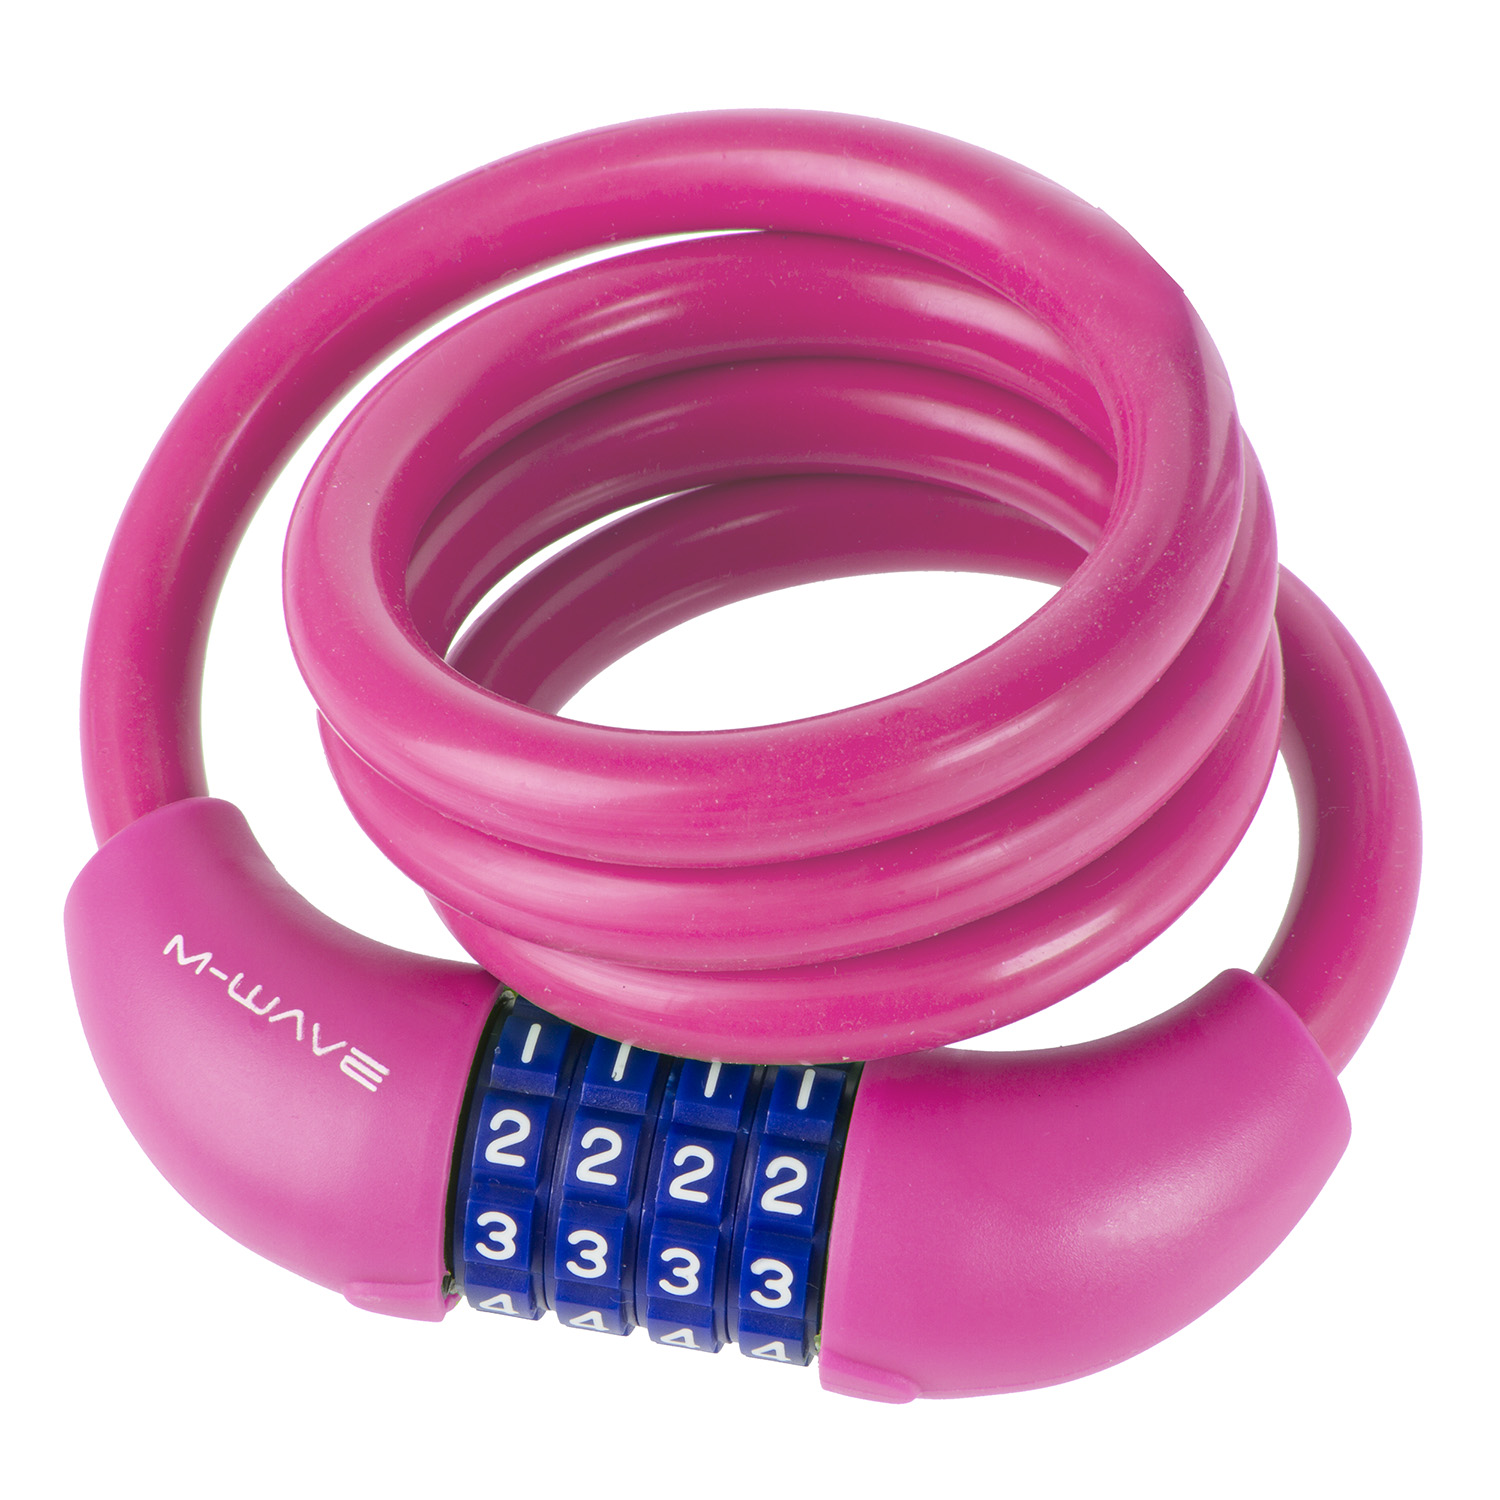 ZAHLEN-Spiralschloss SILIKON 12 mm x 1000 mm in Pink neon